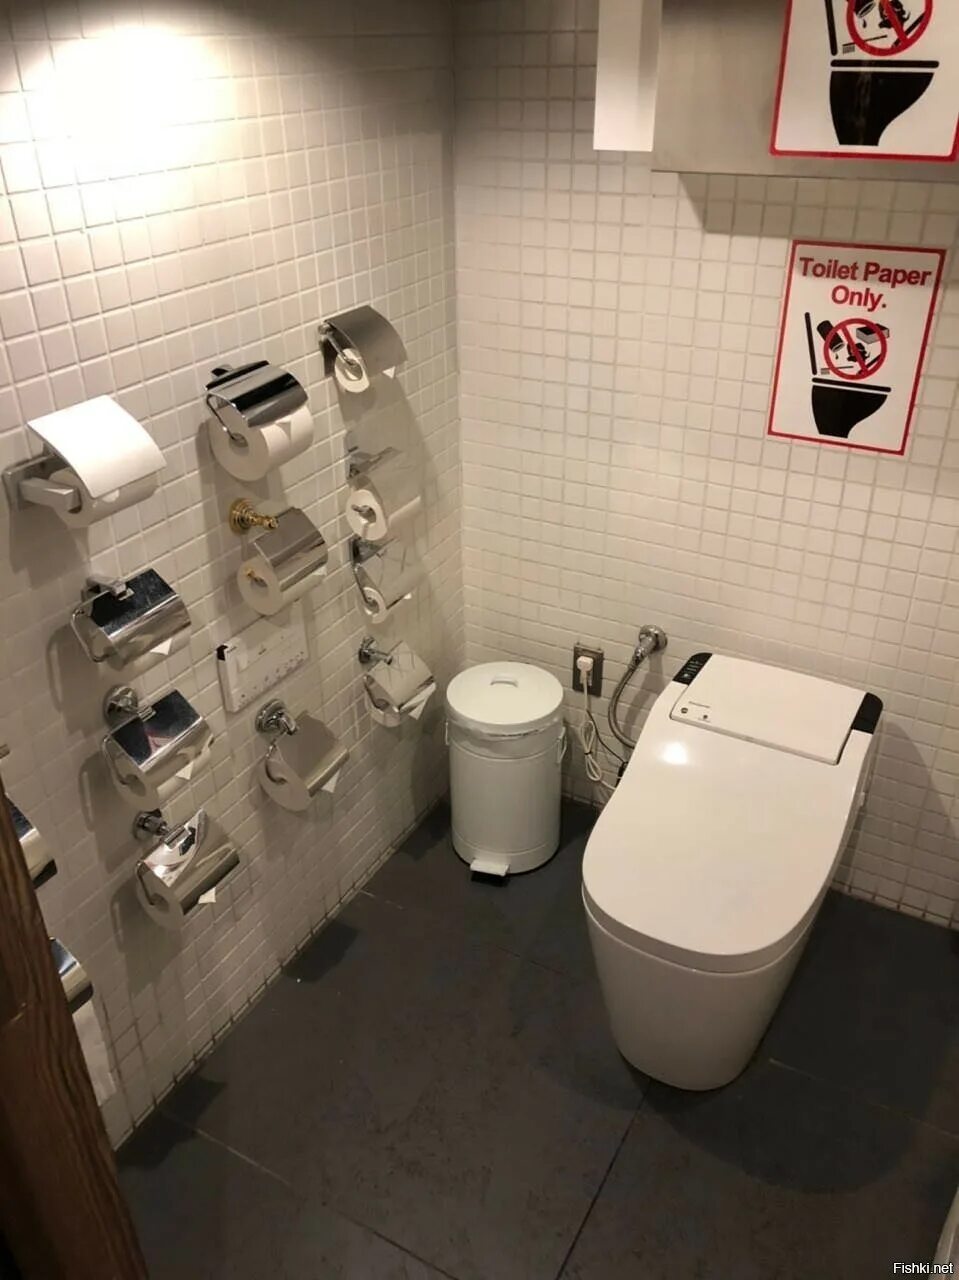 Покажи фотографию туалета. Туалеты в Японии. Смешные общественные туалеты. Туалетная бумага для общественных туалетов. Туалетная комната в Японии.